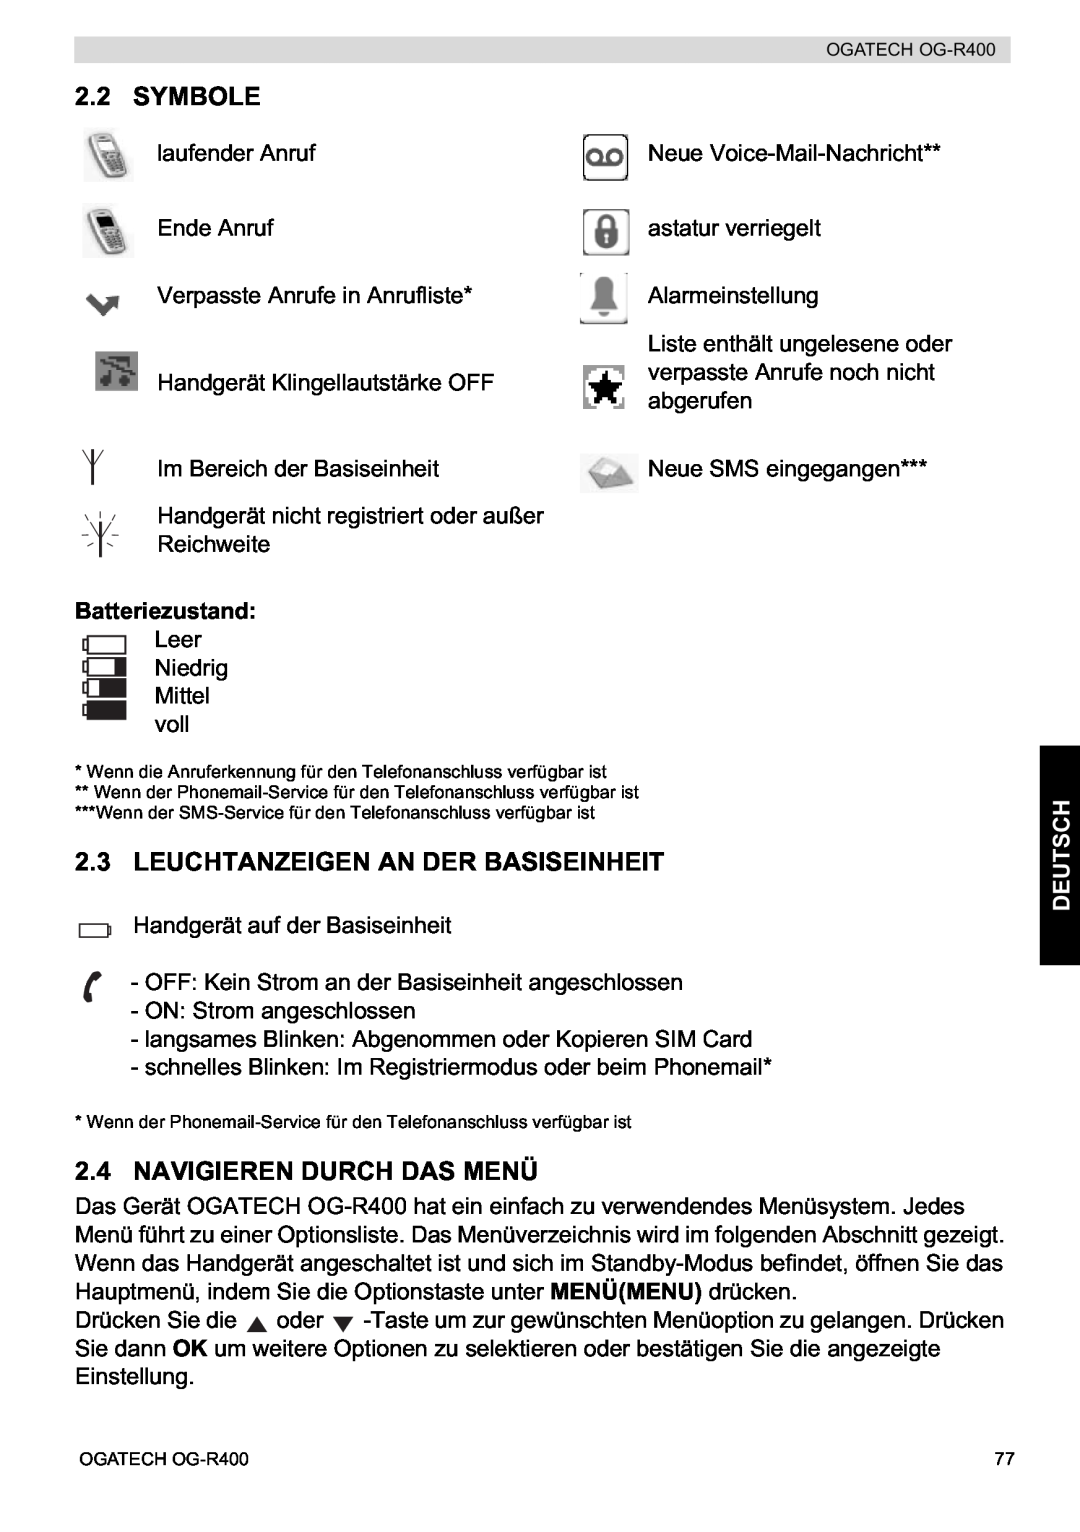 Topcom OG-R400 manual Symbole, Leuchtanzeigen An Der Basiseinheit, Navigieren Durch Das Menü, Batteriezustand, Deutsch 